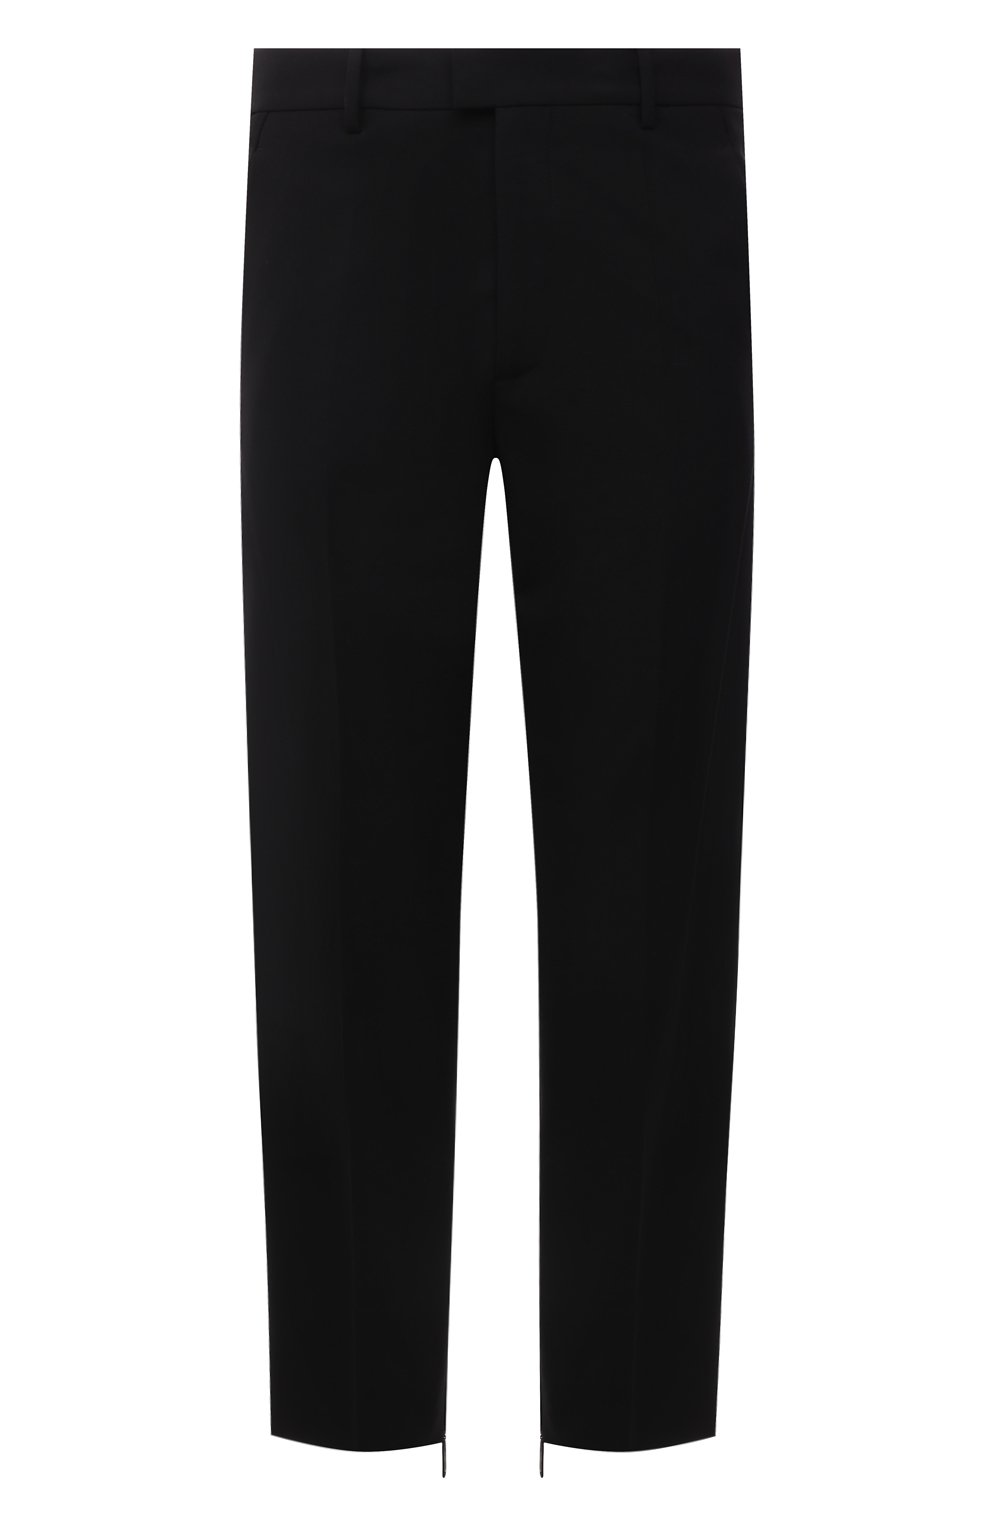 Мужские брюки OFF-WHITE черного цвета, арт. 0MCA196F21FAB001 | Фото 1 (Материал внешний: Шерсть, Синтетический материал; Длина (брюки, джинсы): Стандартные; Случай: Повседневный; Стили: Классический; Материал подклада: Вискоза)